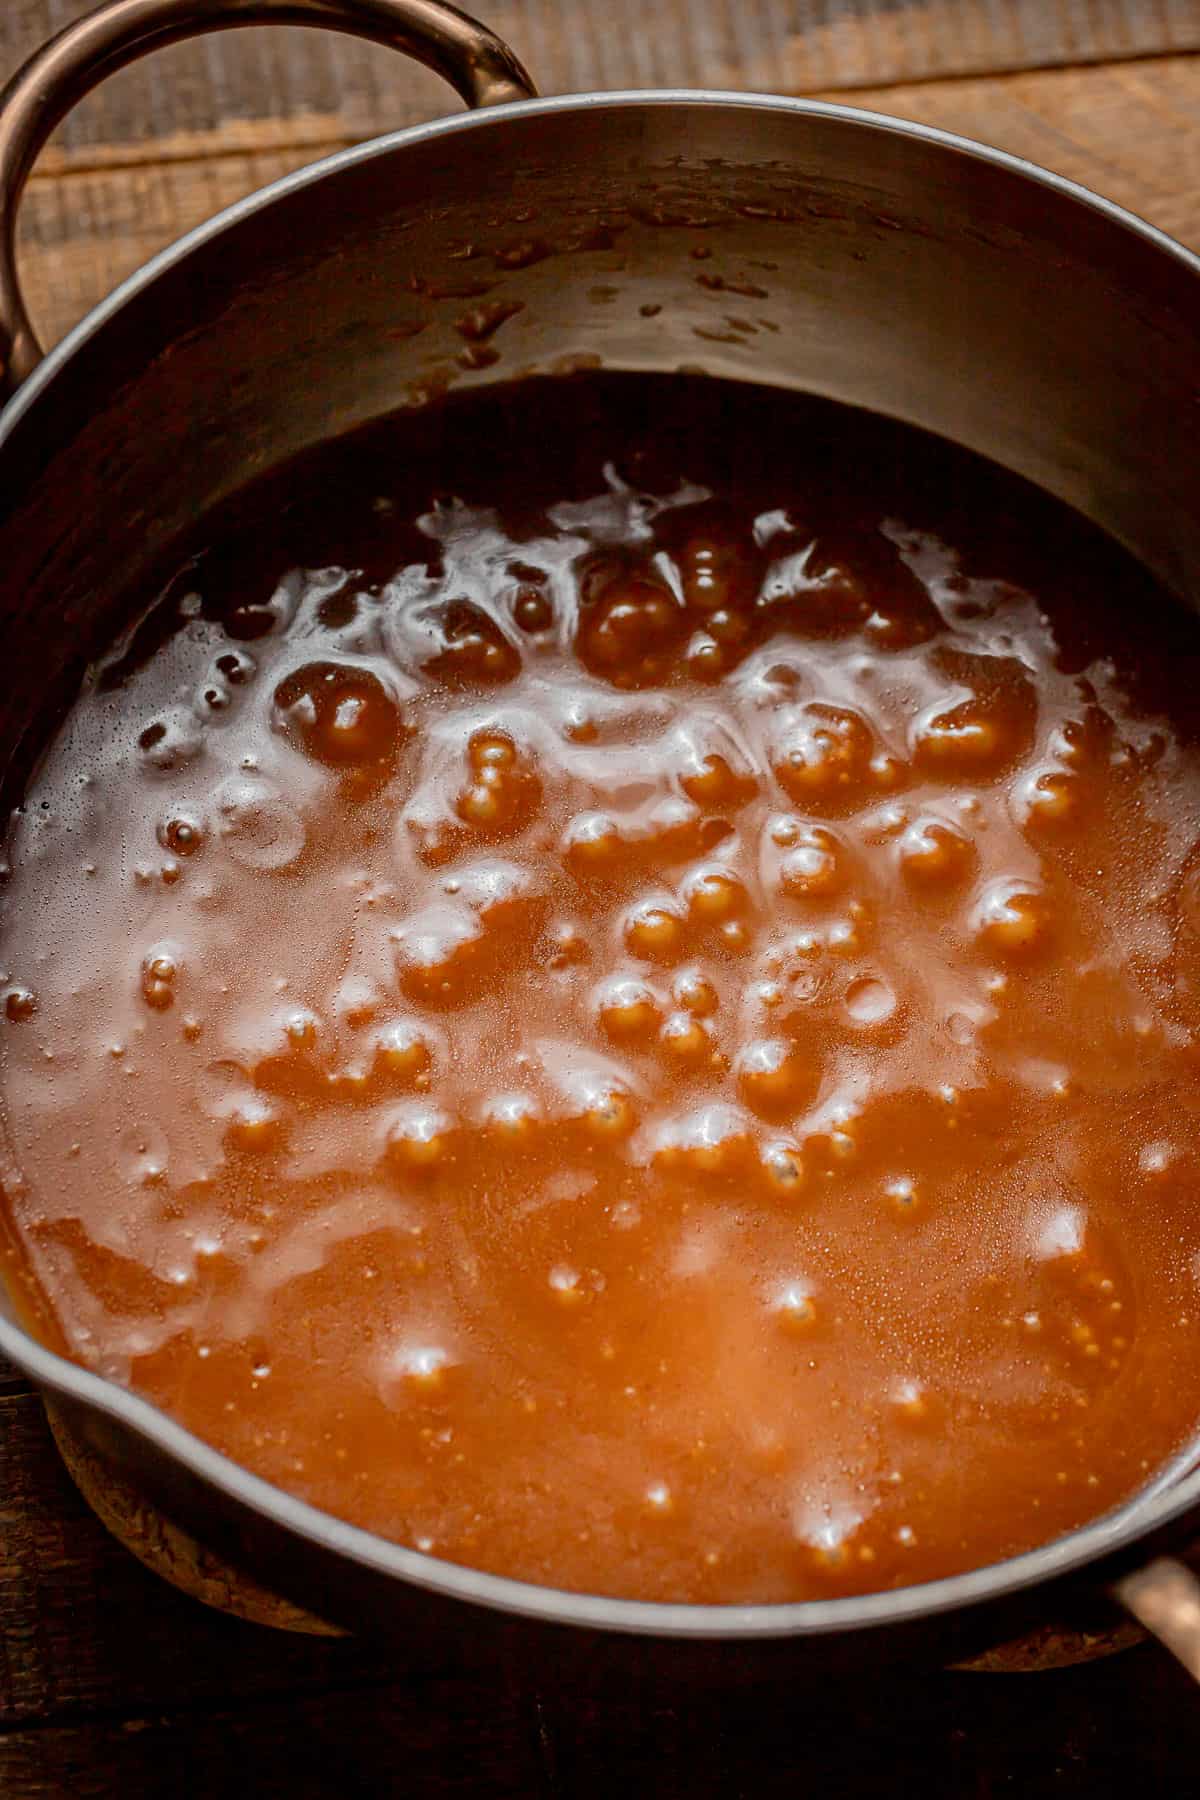 prepared caramel in sauce pot.